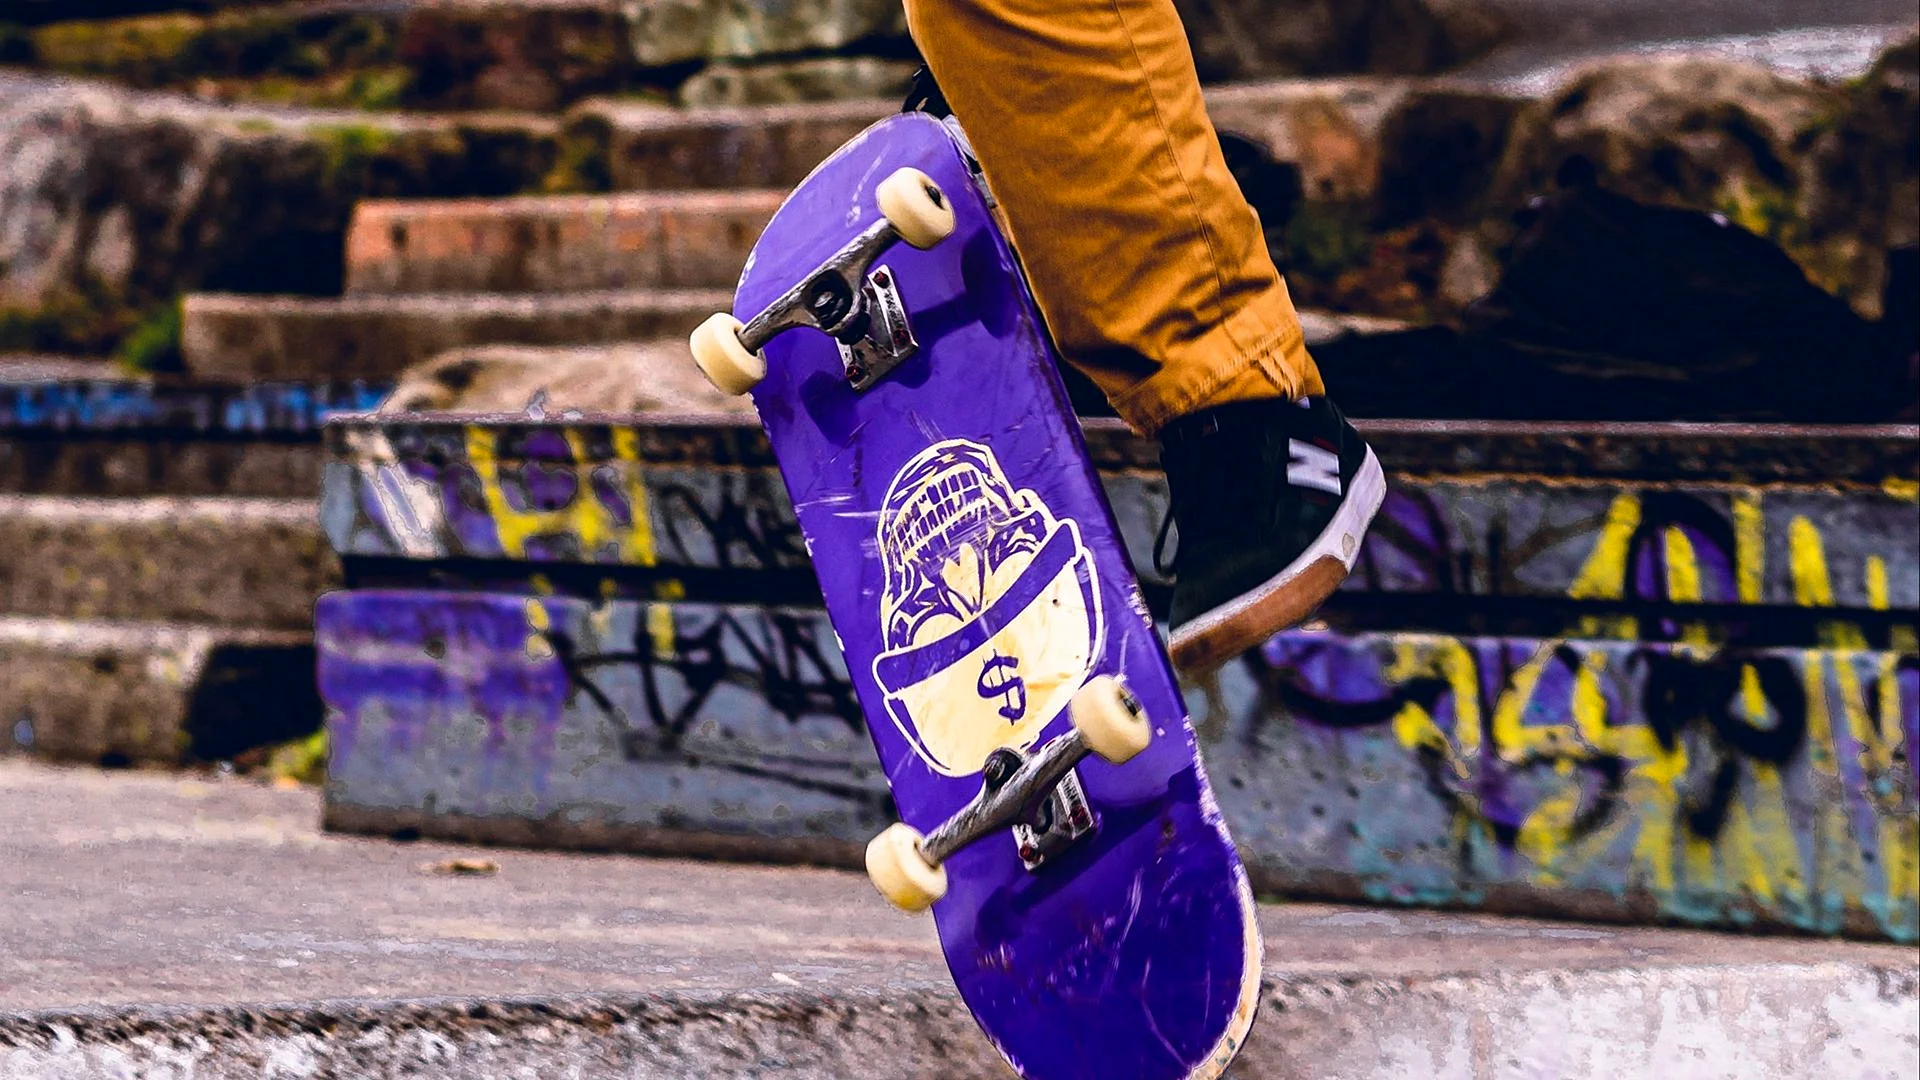 Skate Wallpaper